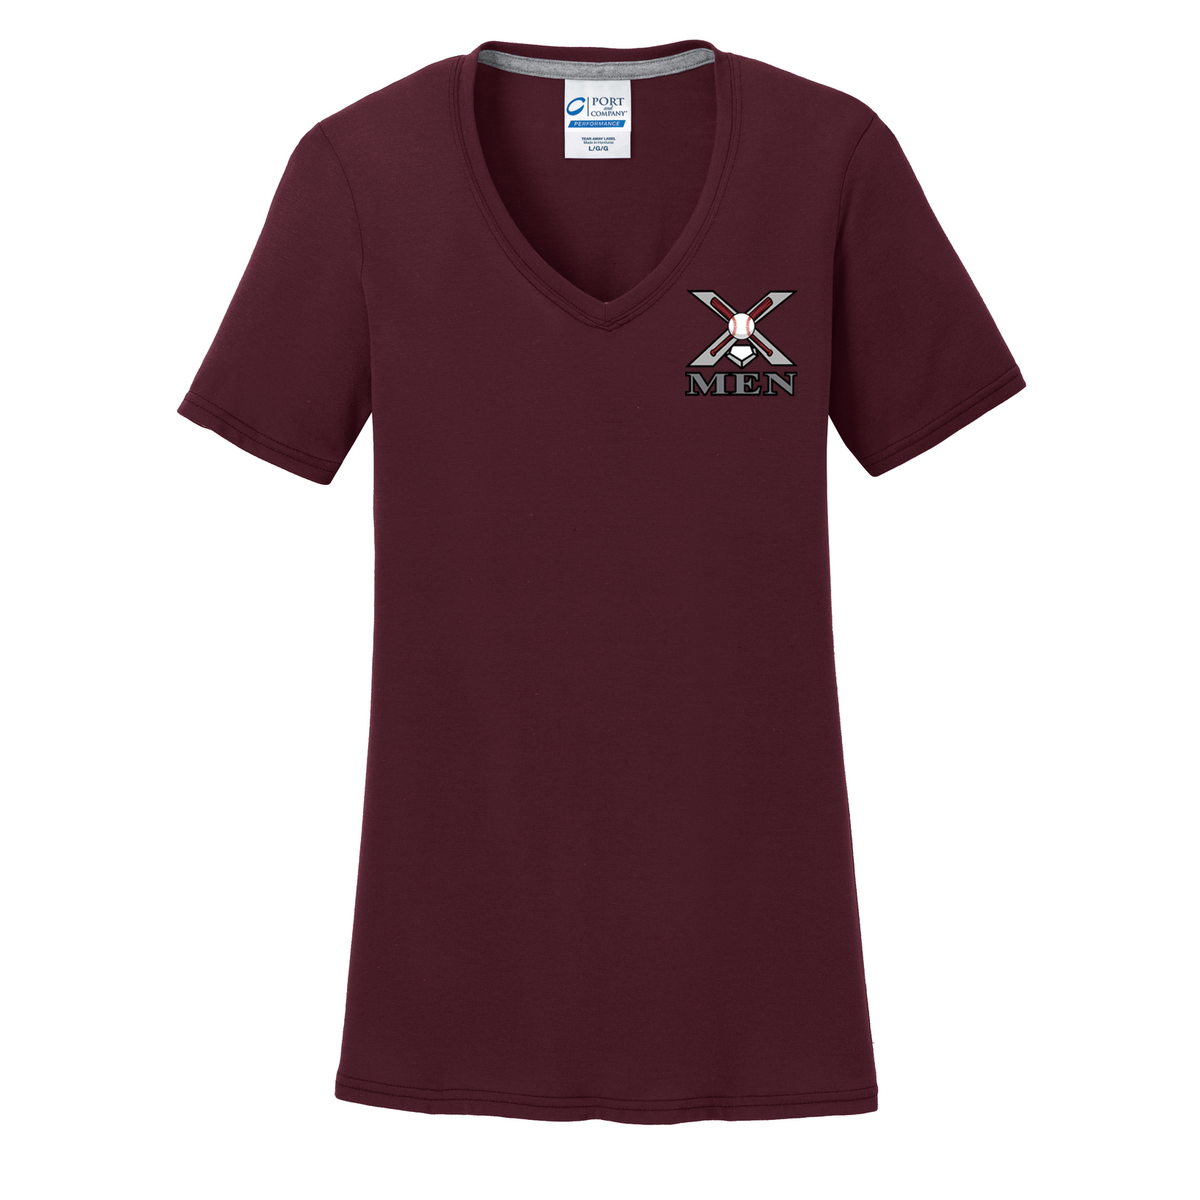 X Men Baseball Women's T-Shirt